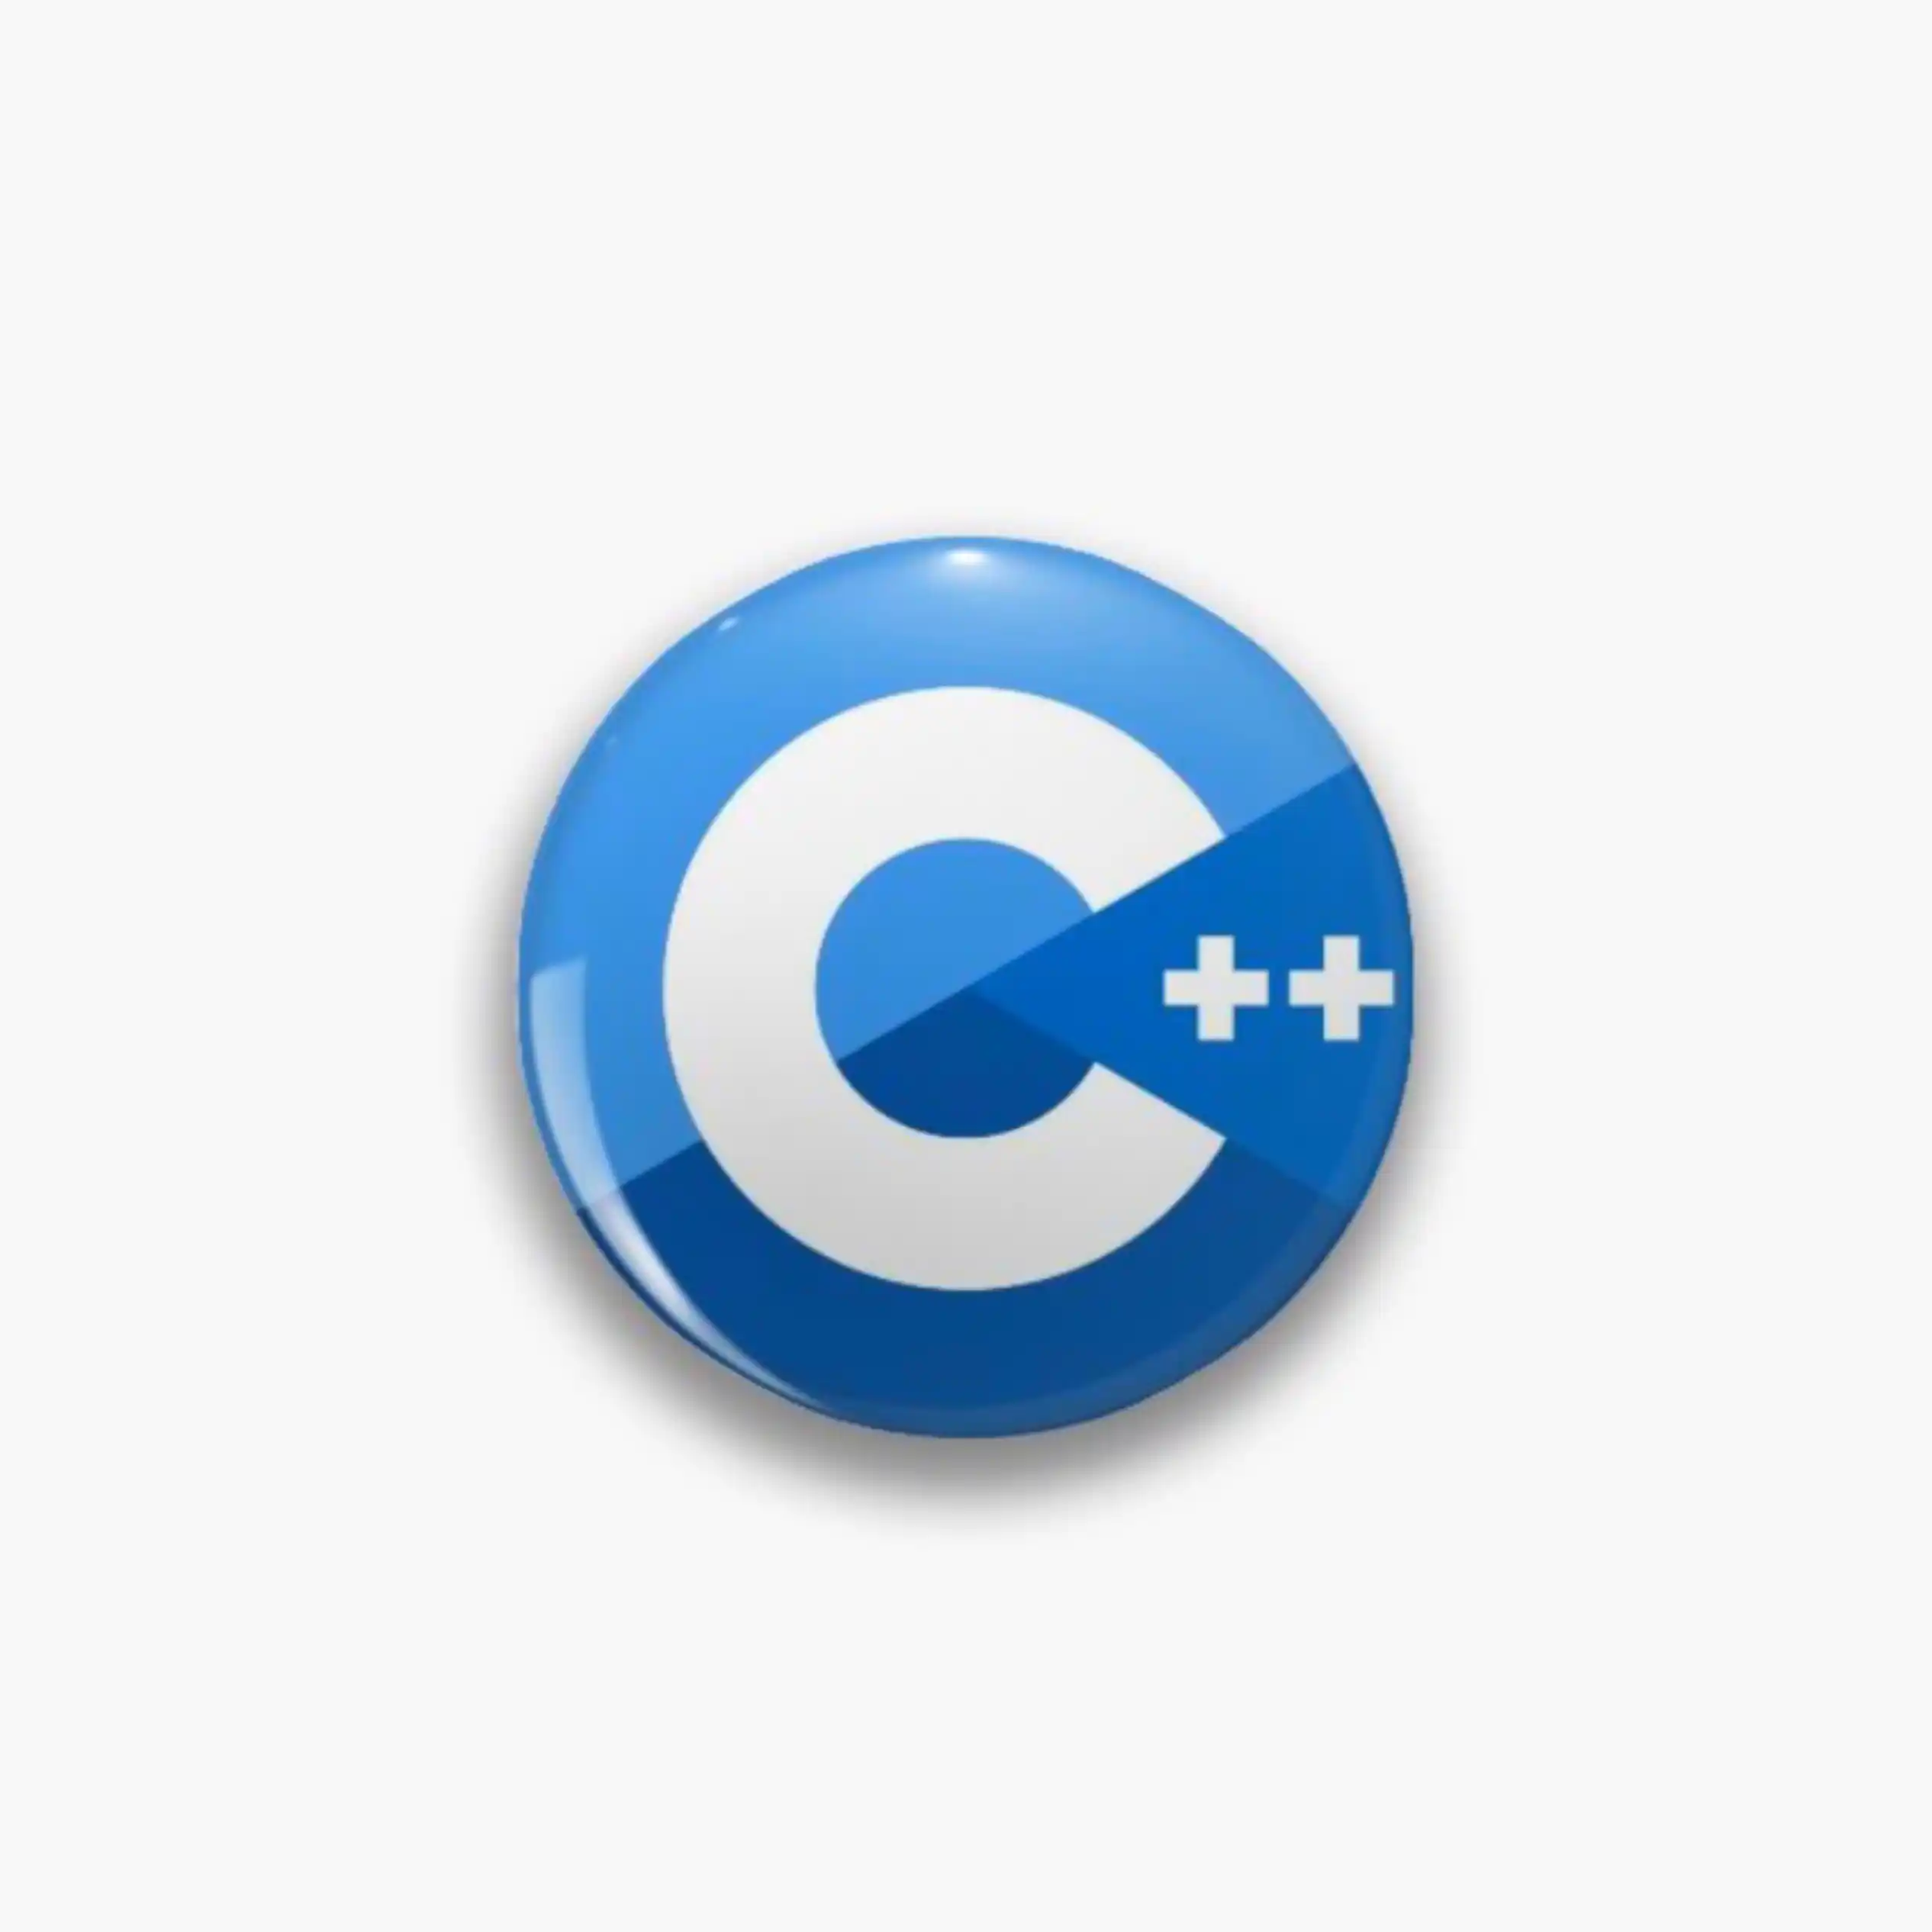 C++ Forums logo